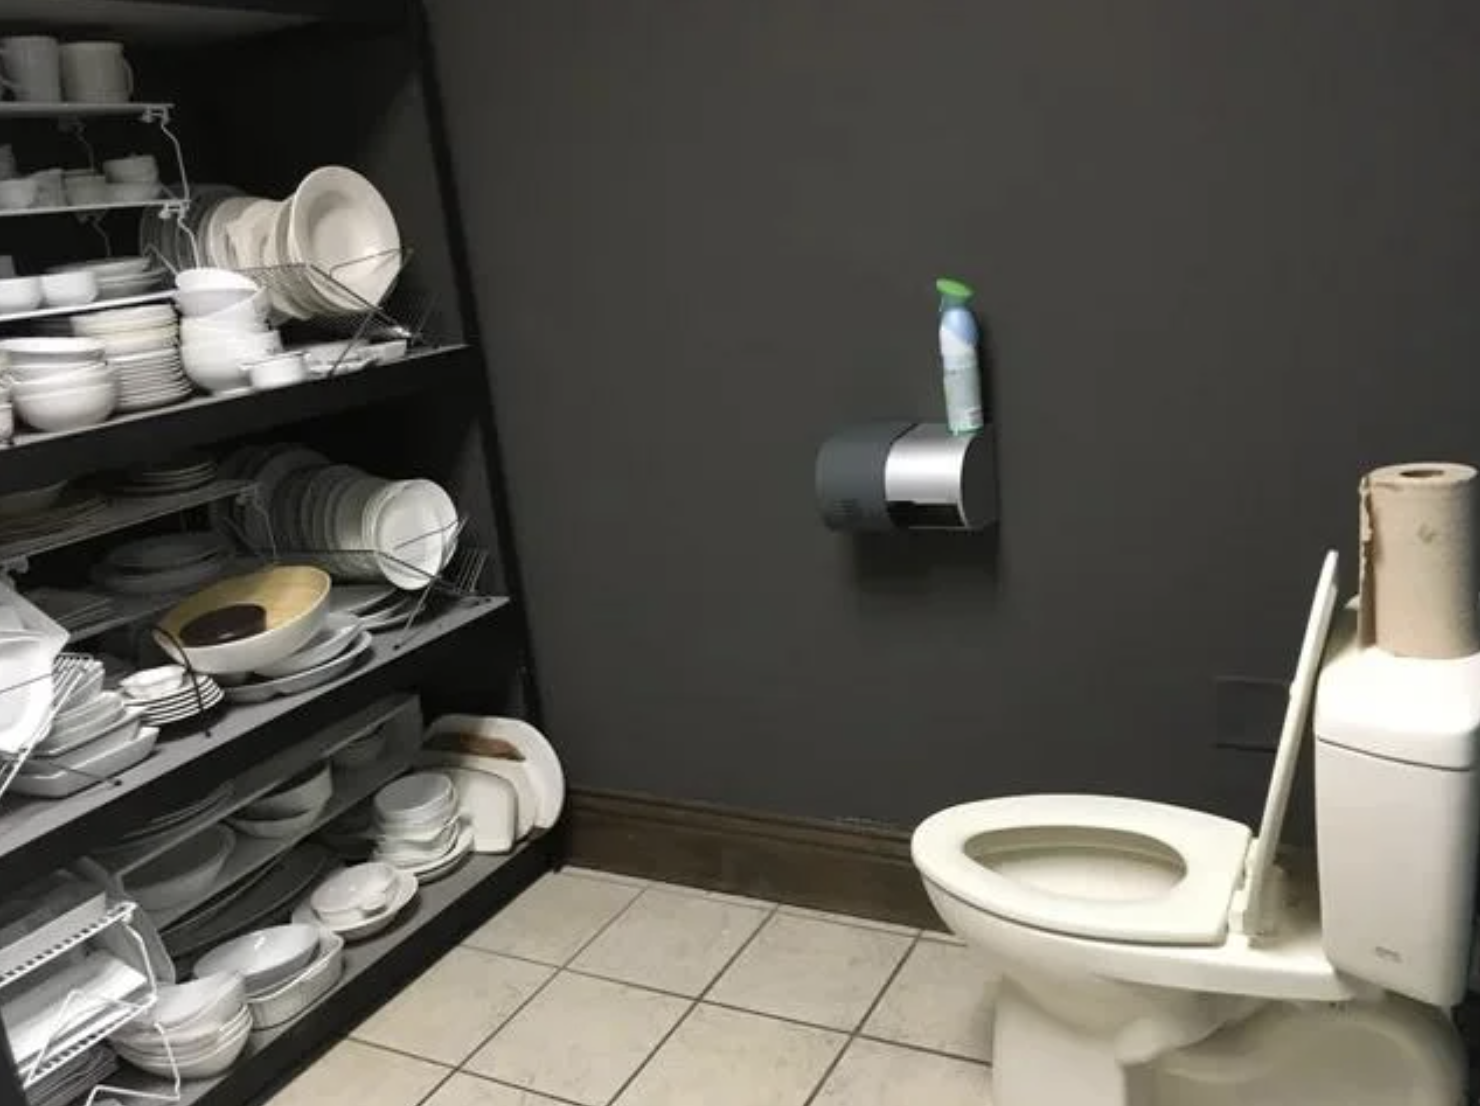 Trashy pics - bathroom